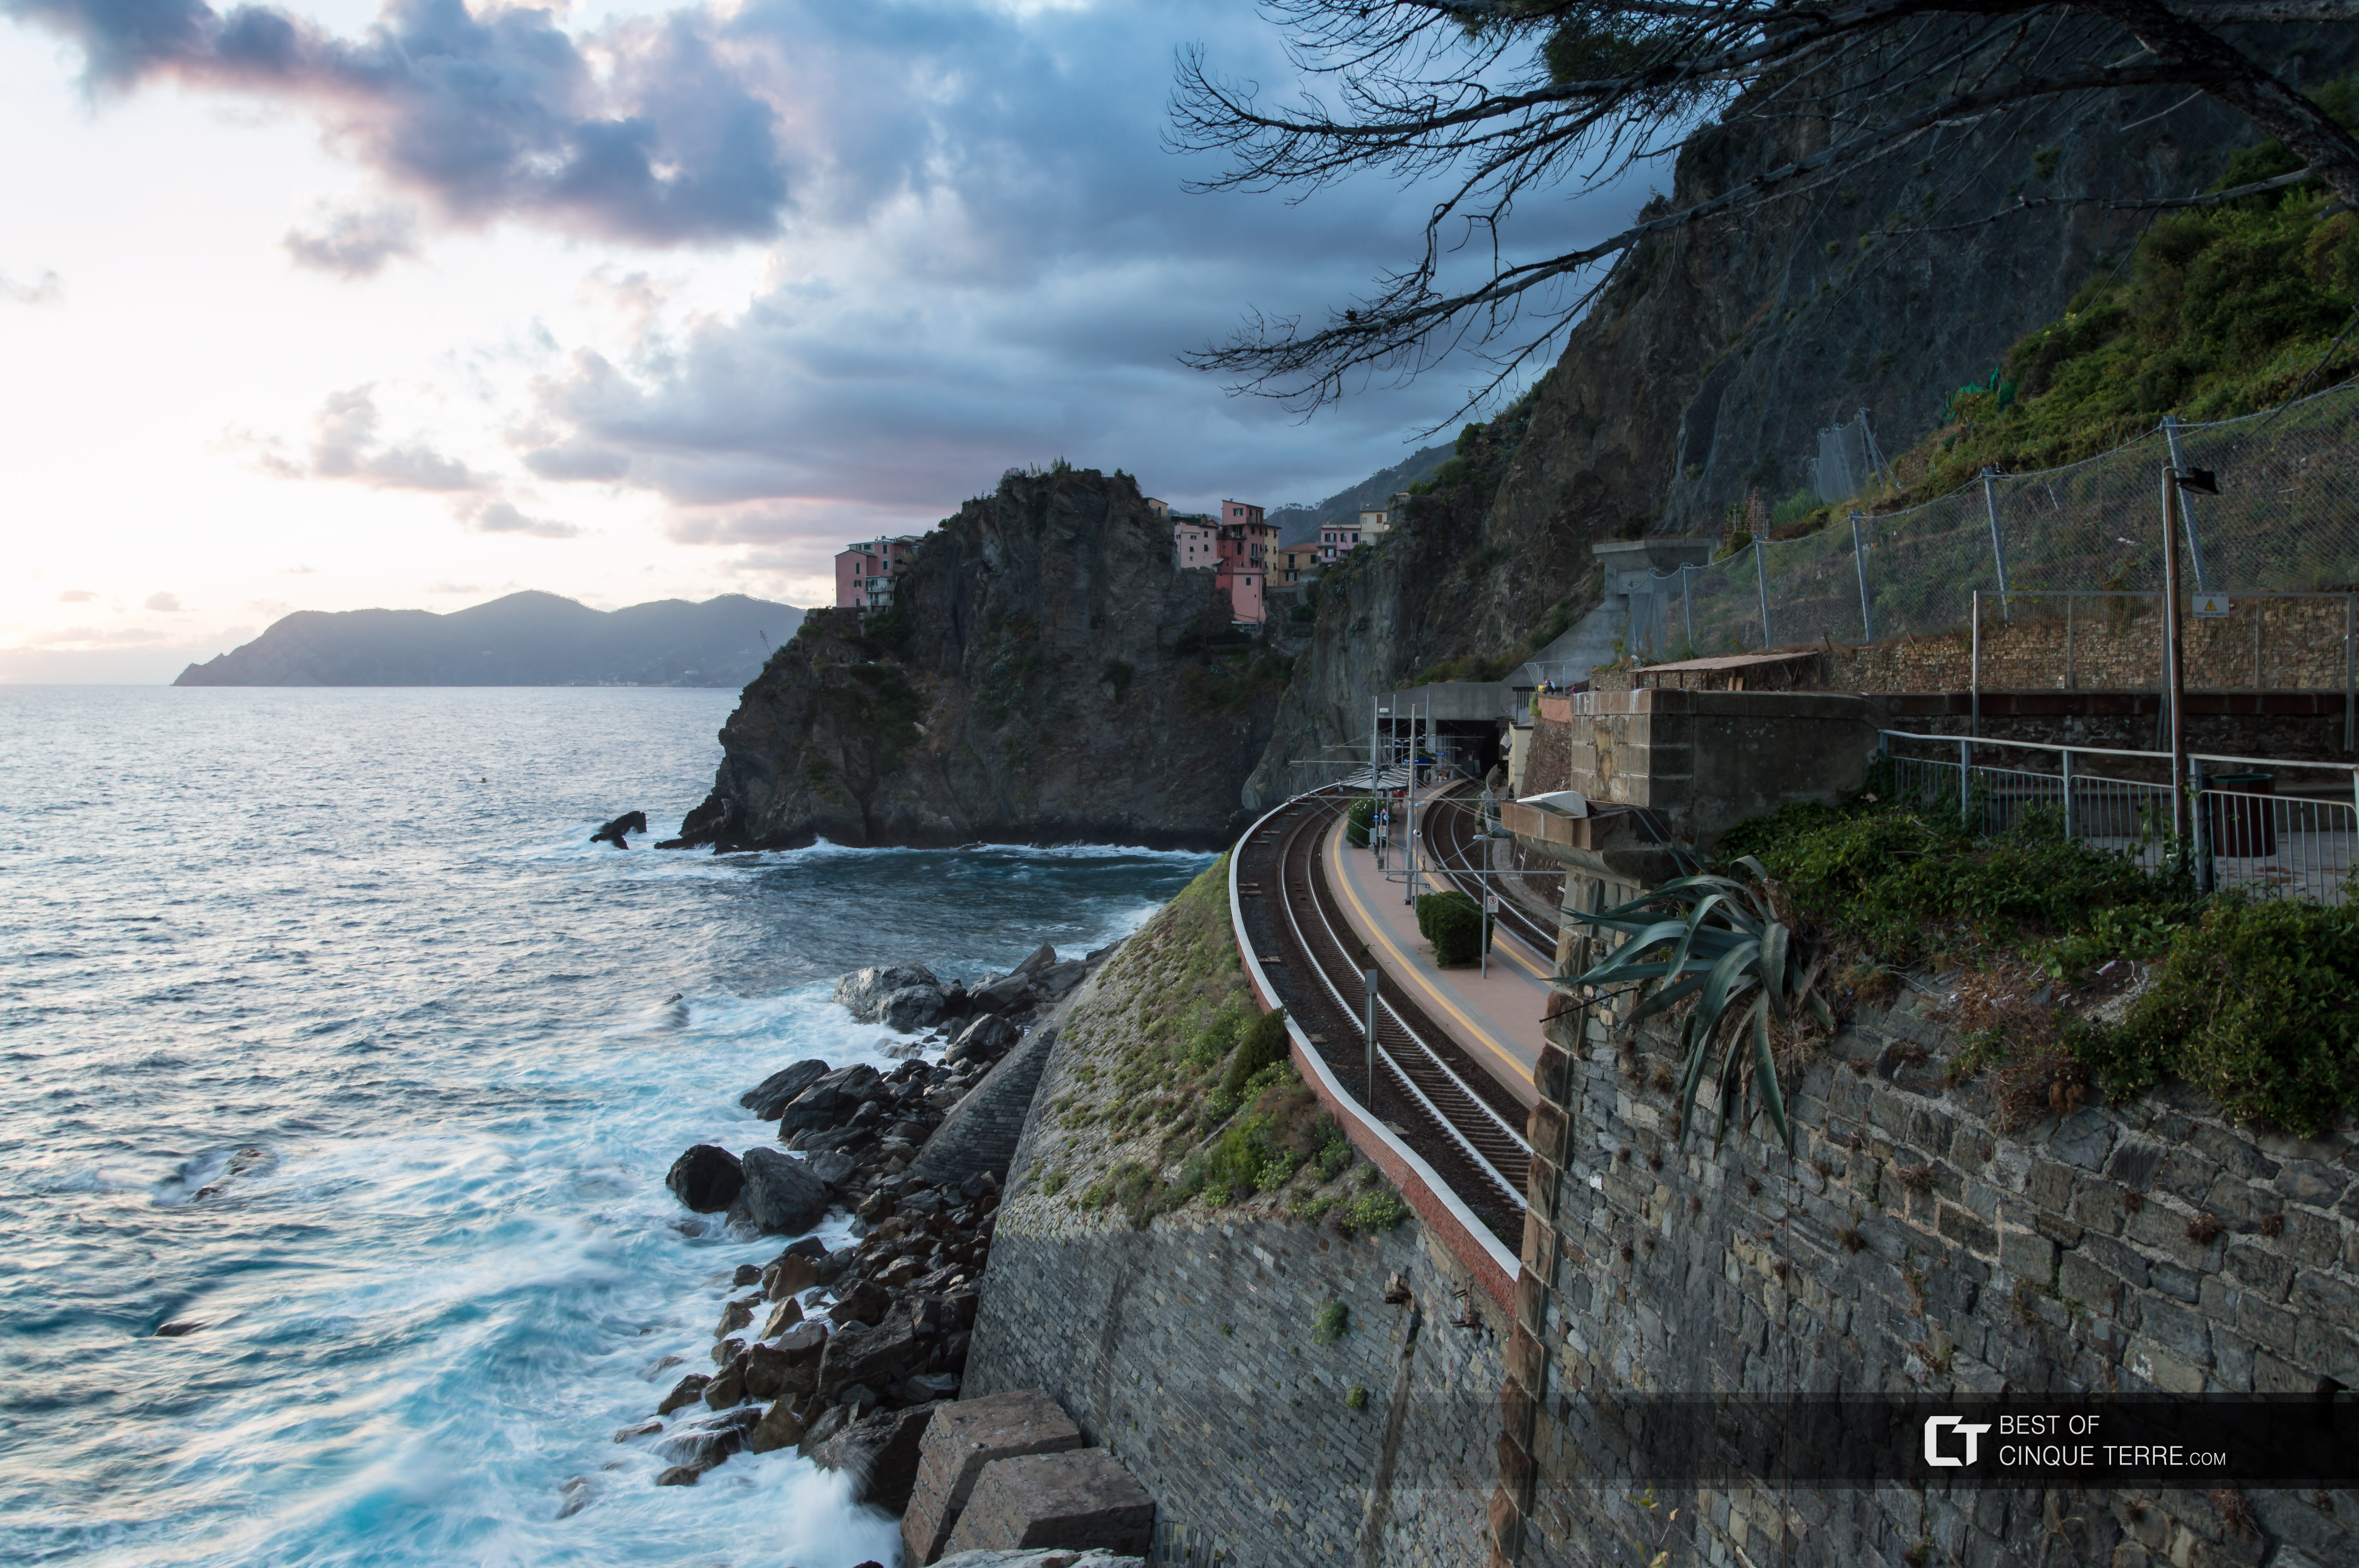 Vista da estação e da vila atrás da rocha da Via dell'Amore, Manarola, Cinque Terre, Itália